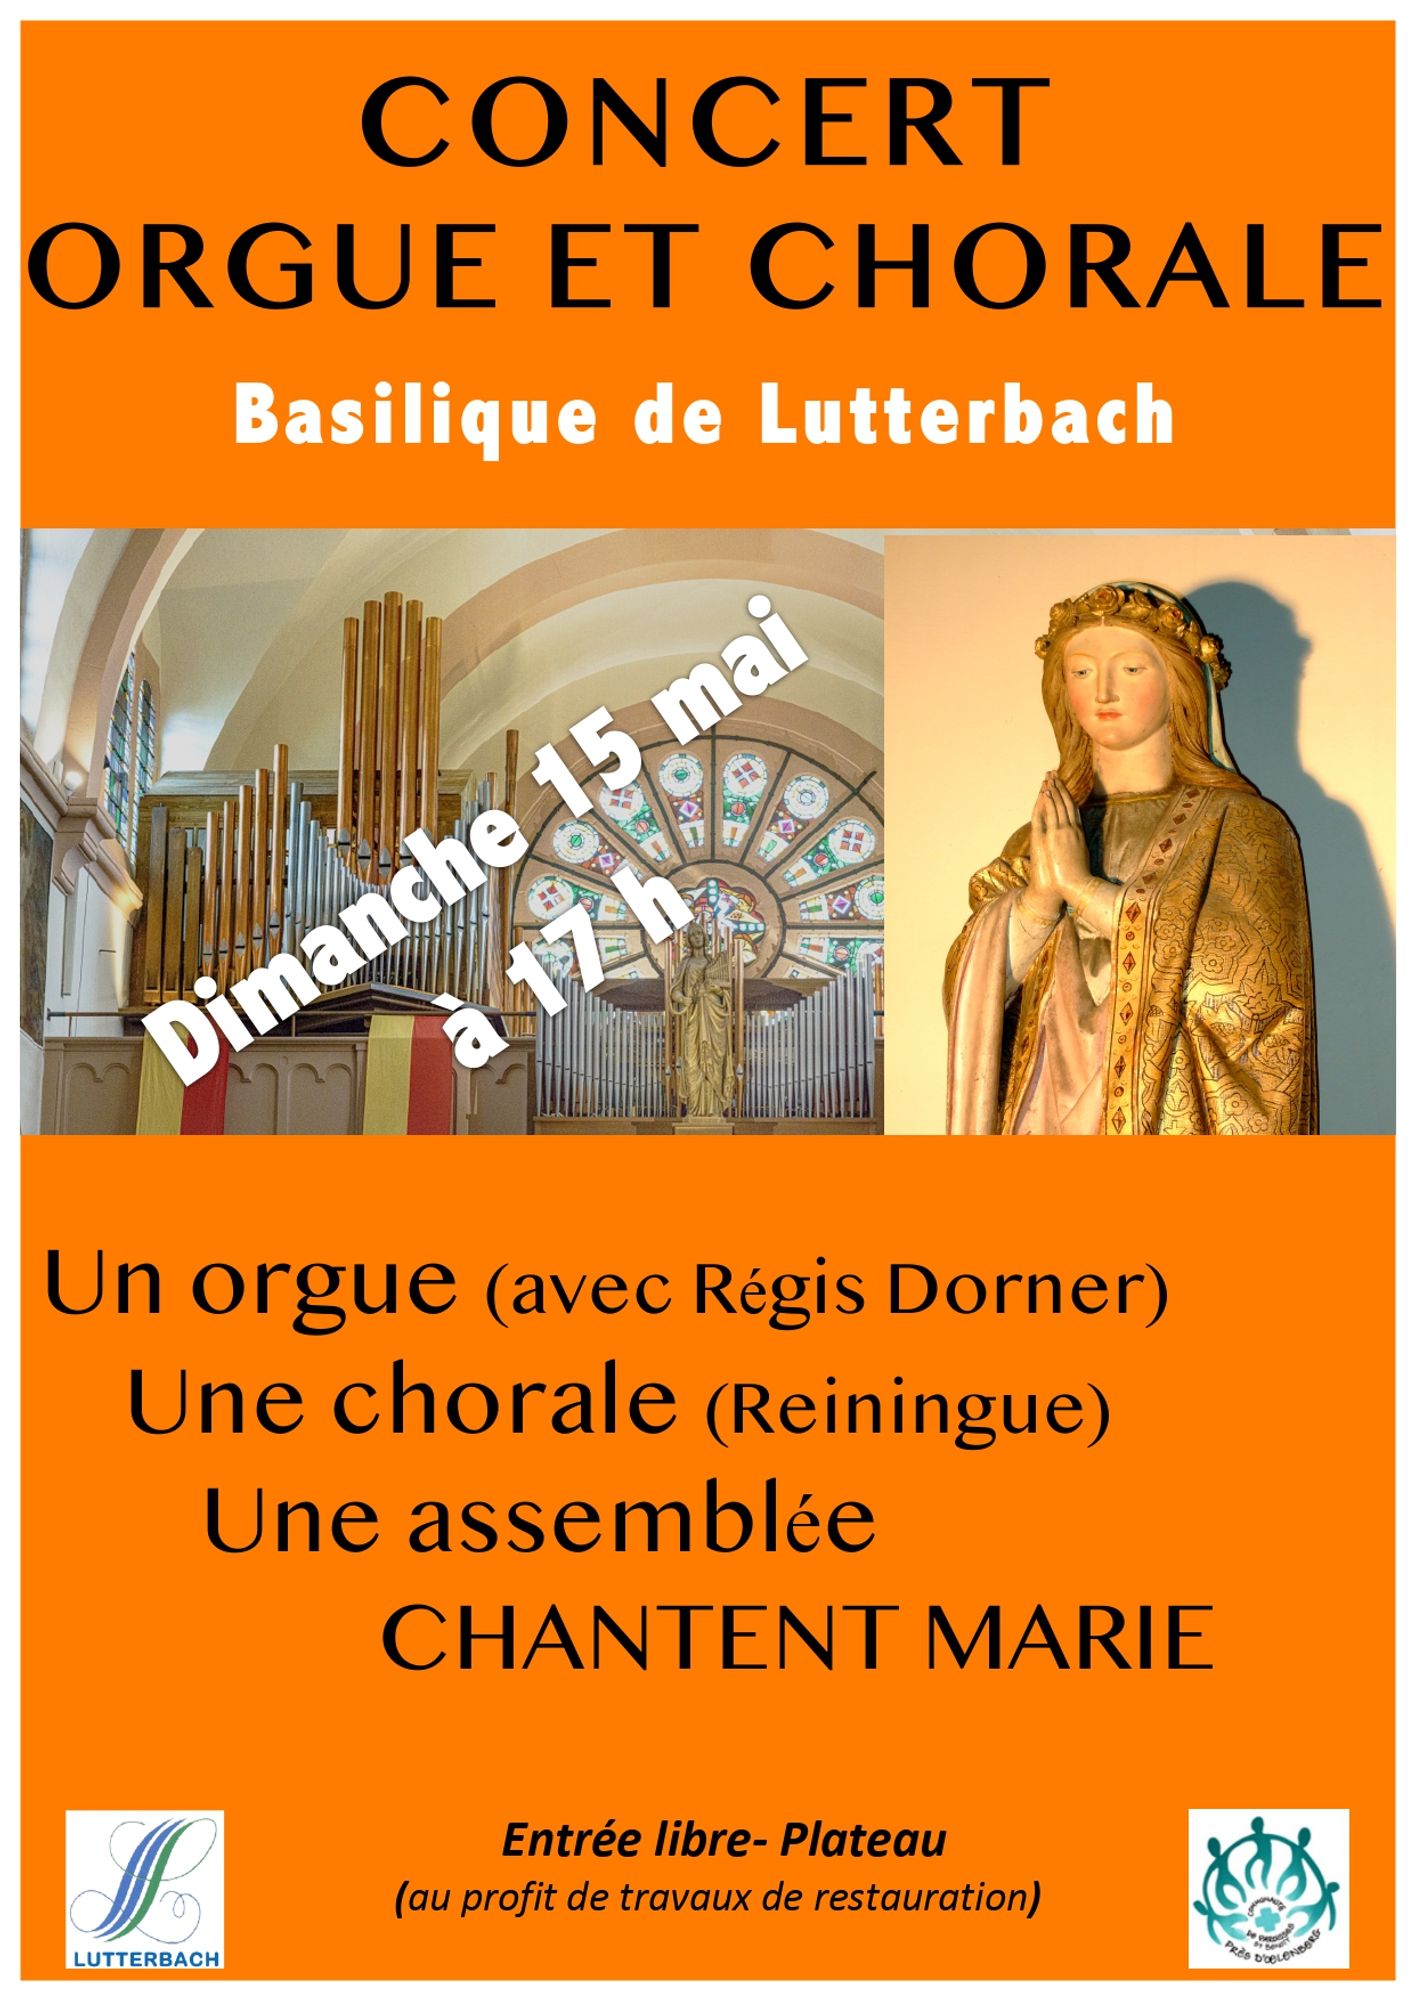 Un orgue, une chorale et une assemblée pour chanter Marie